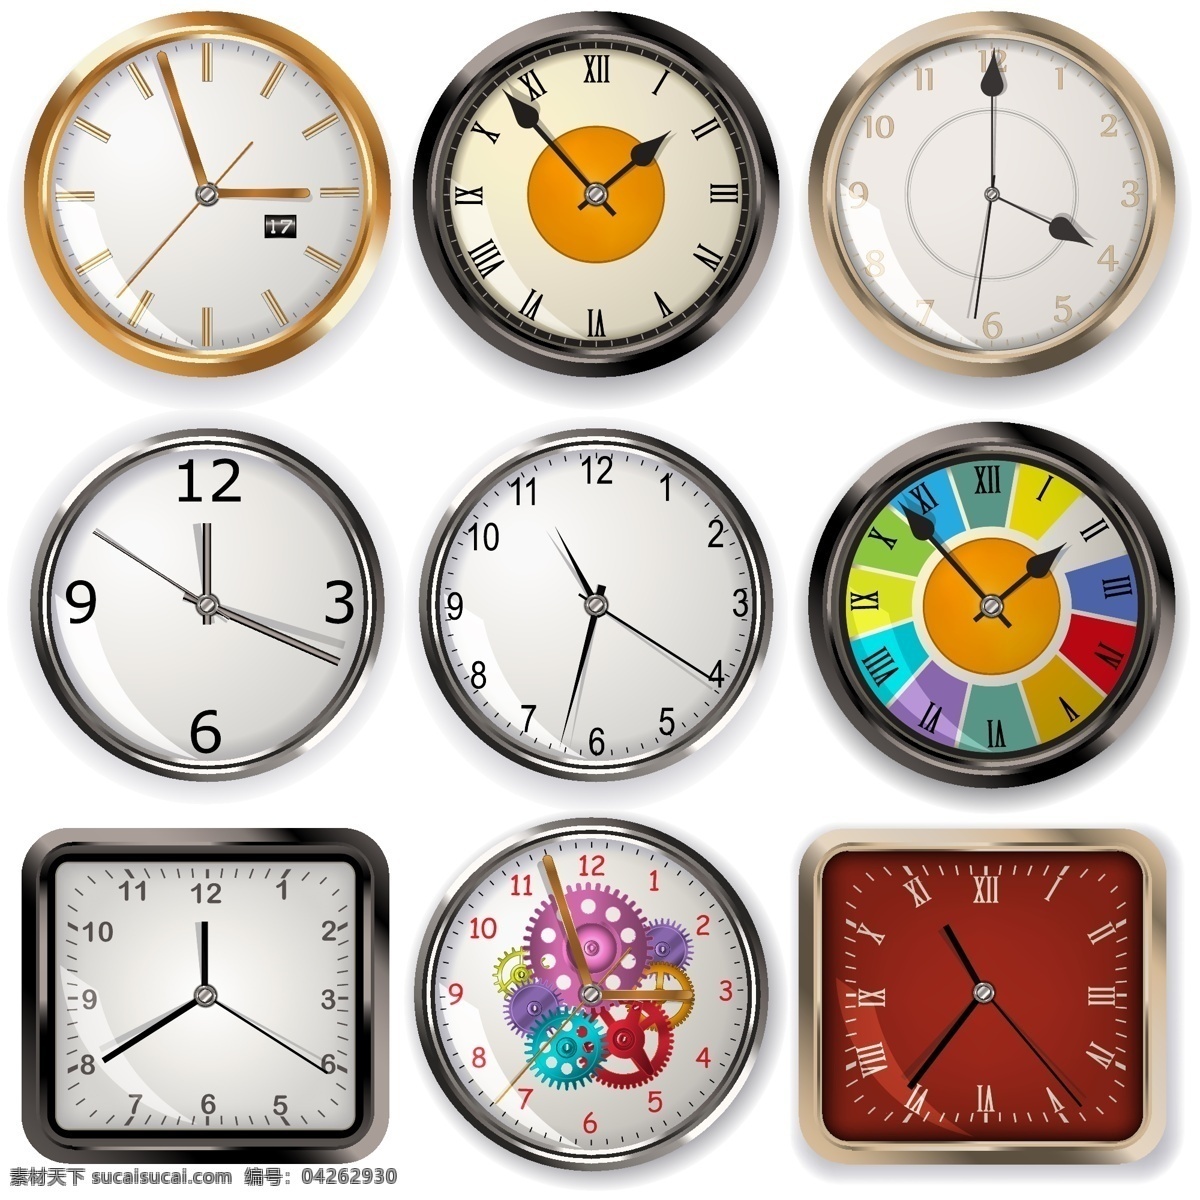 矢量时钟 矢量钟表 国际时间 北京时间 钟表 钟表图案